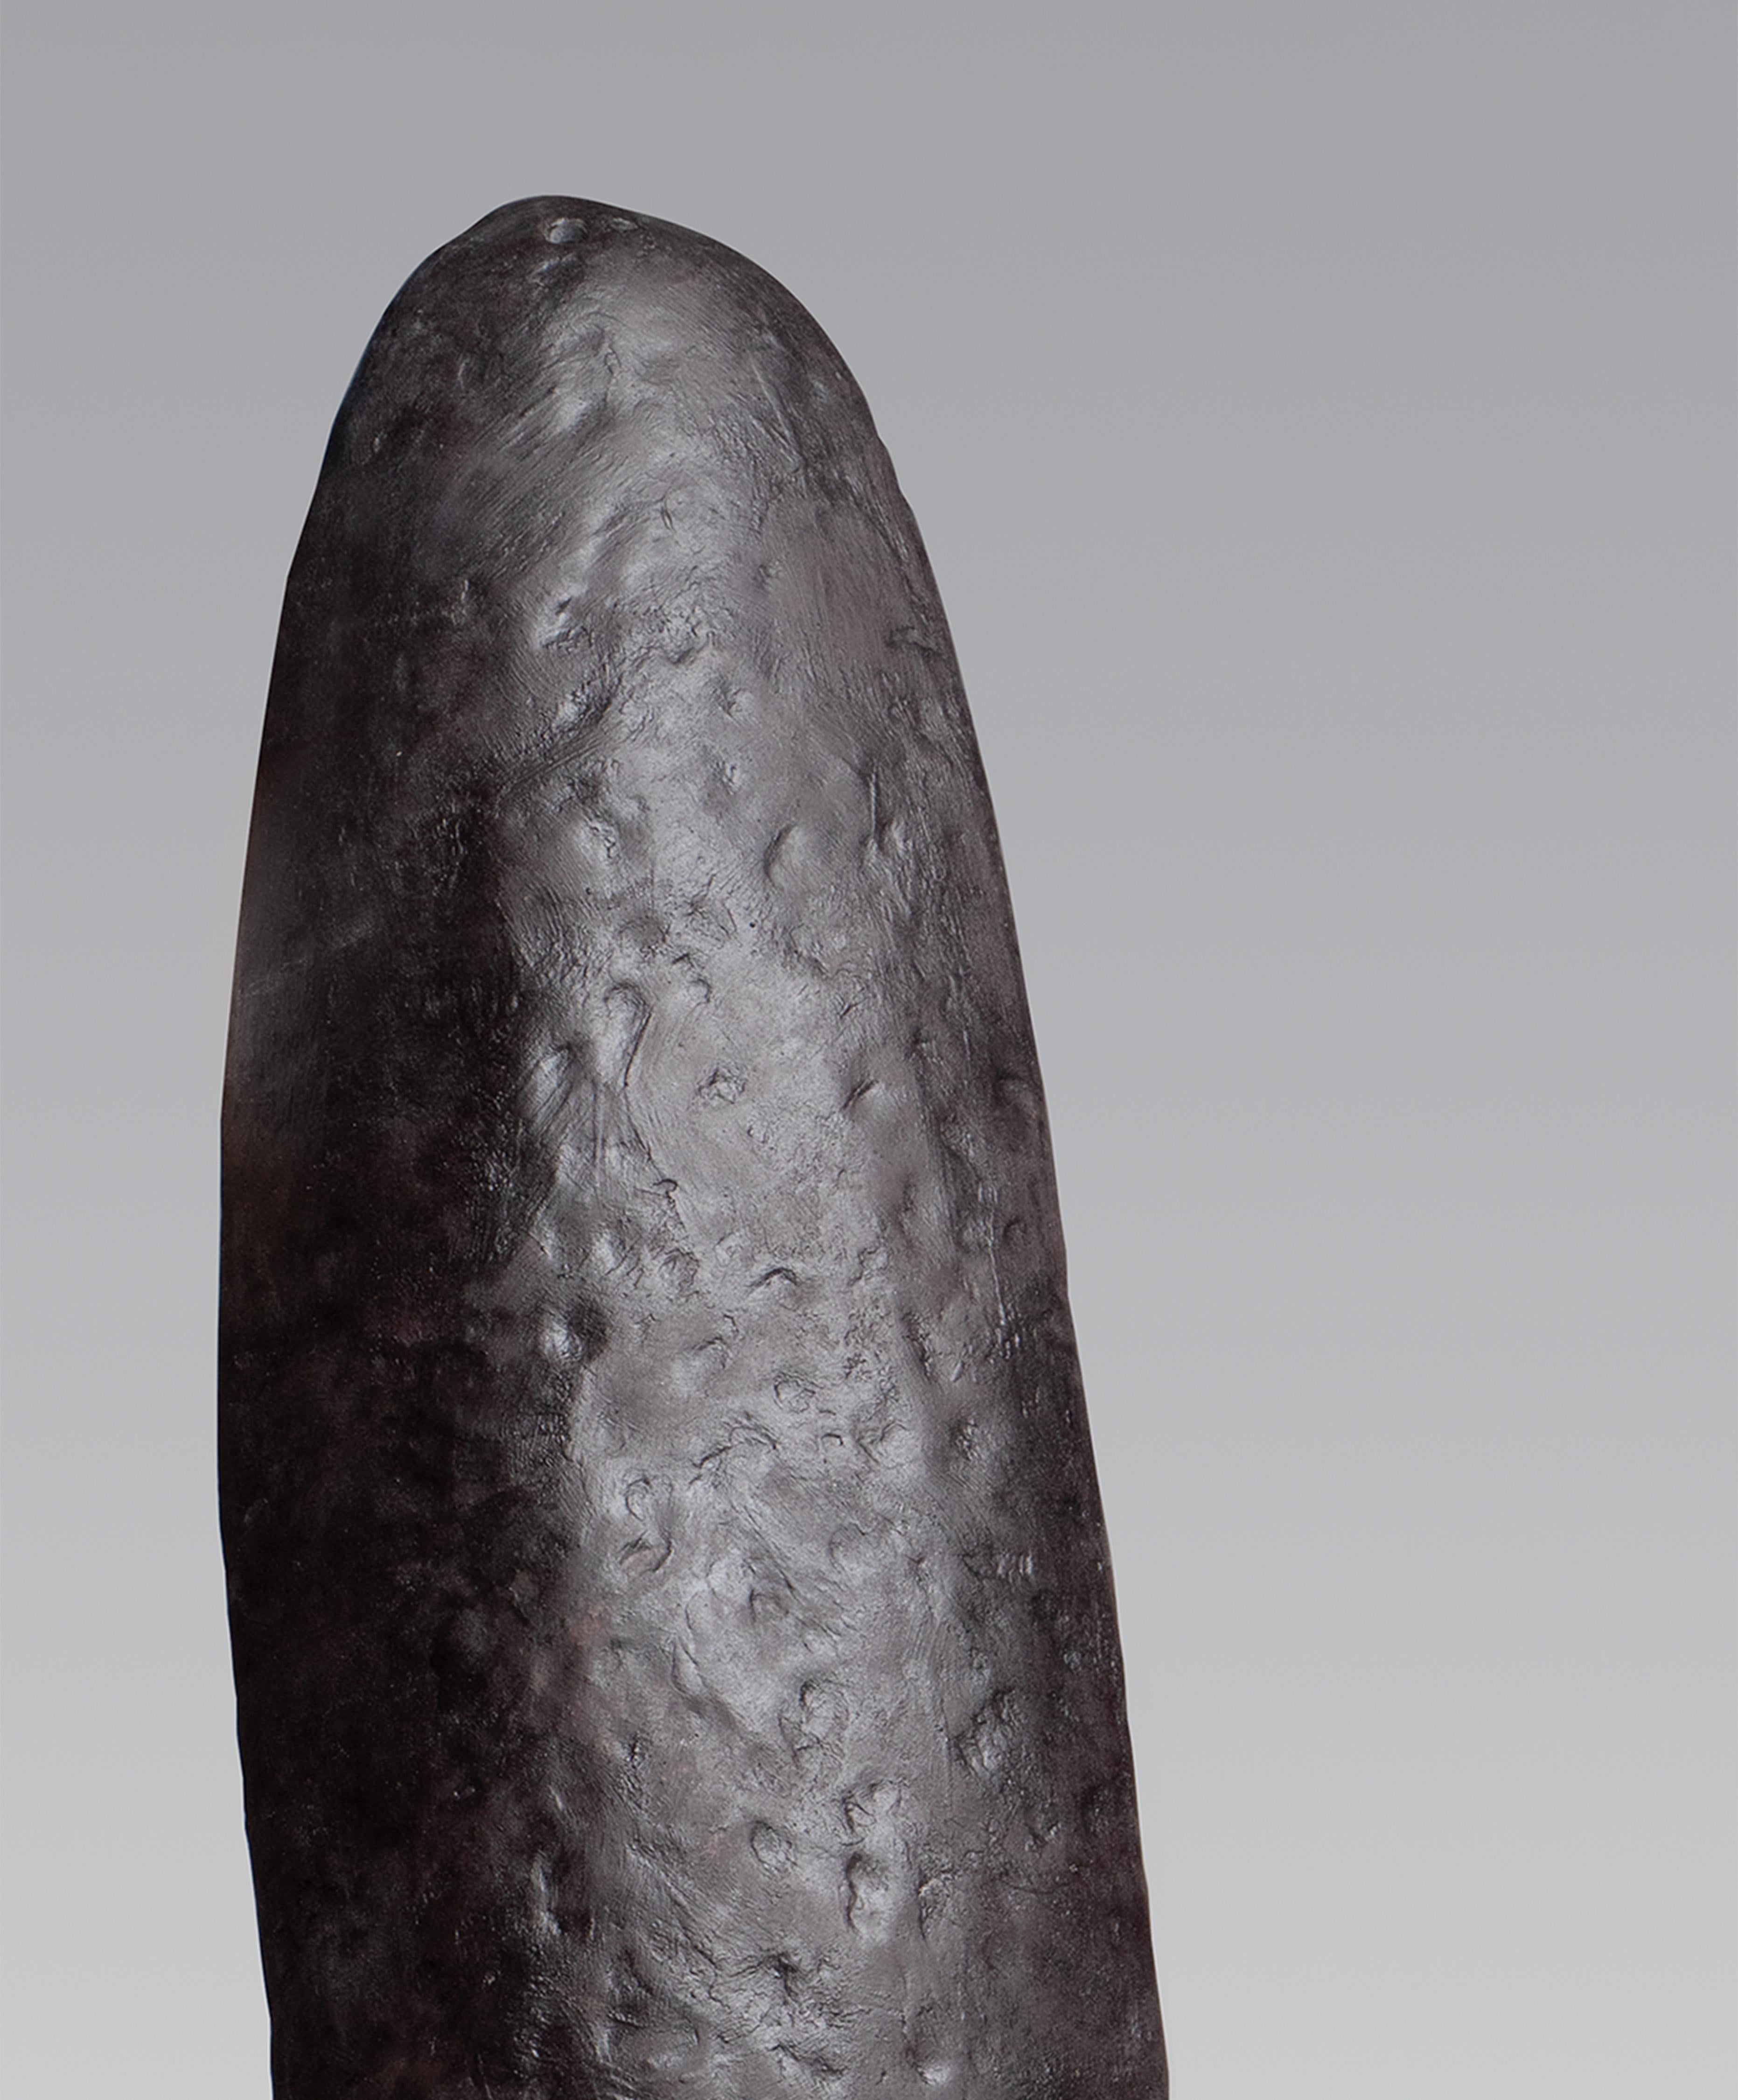 ObscuroPR12 Sculpture conçue et réalisée par l'artiste canadienne Pascale Girardin, dont le corps est en grès partiellement émaillé. La structure entière est faite à la main. Les empreintes de mains sculptées dans le corps sont remarquables sur